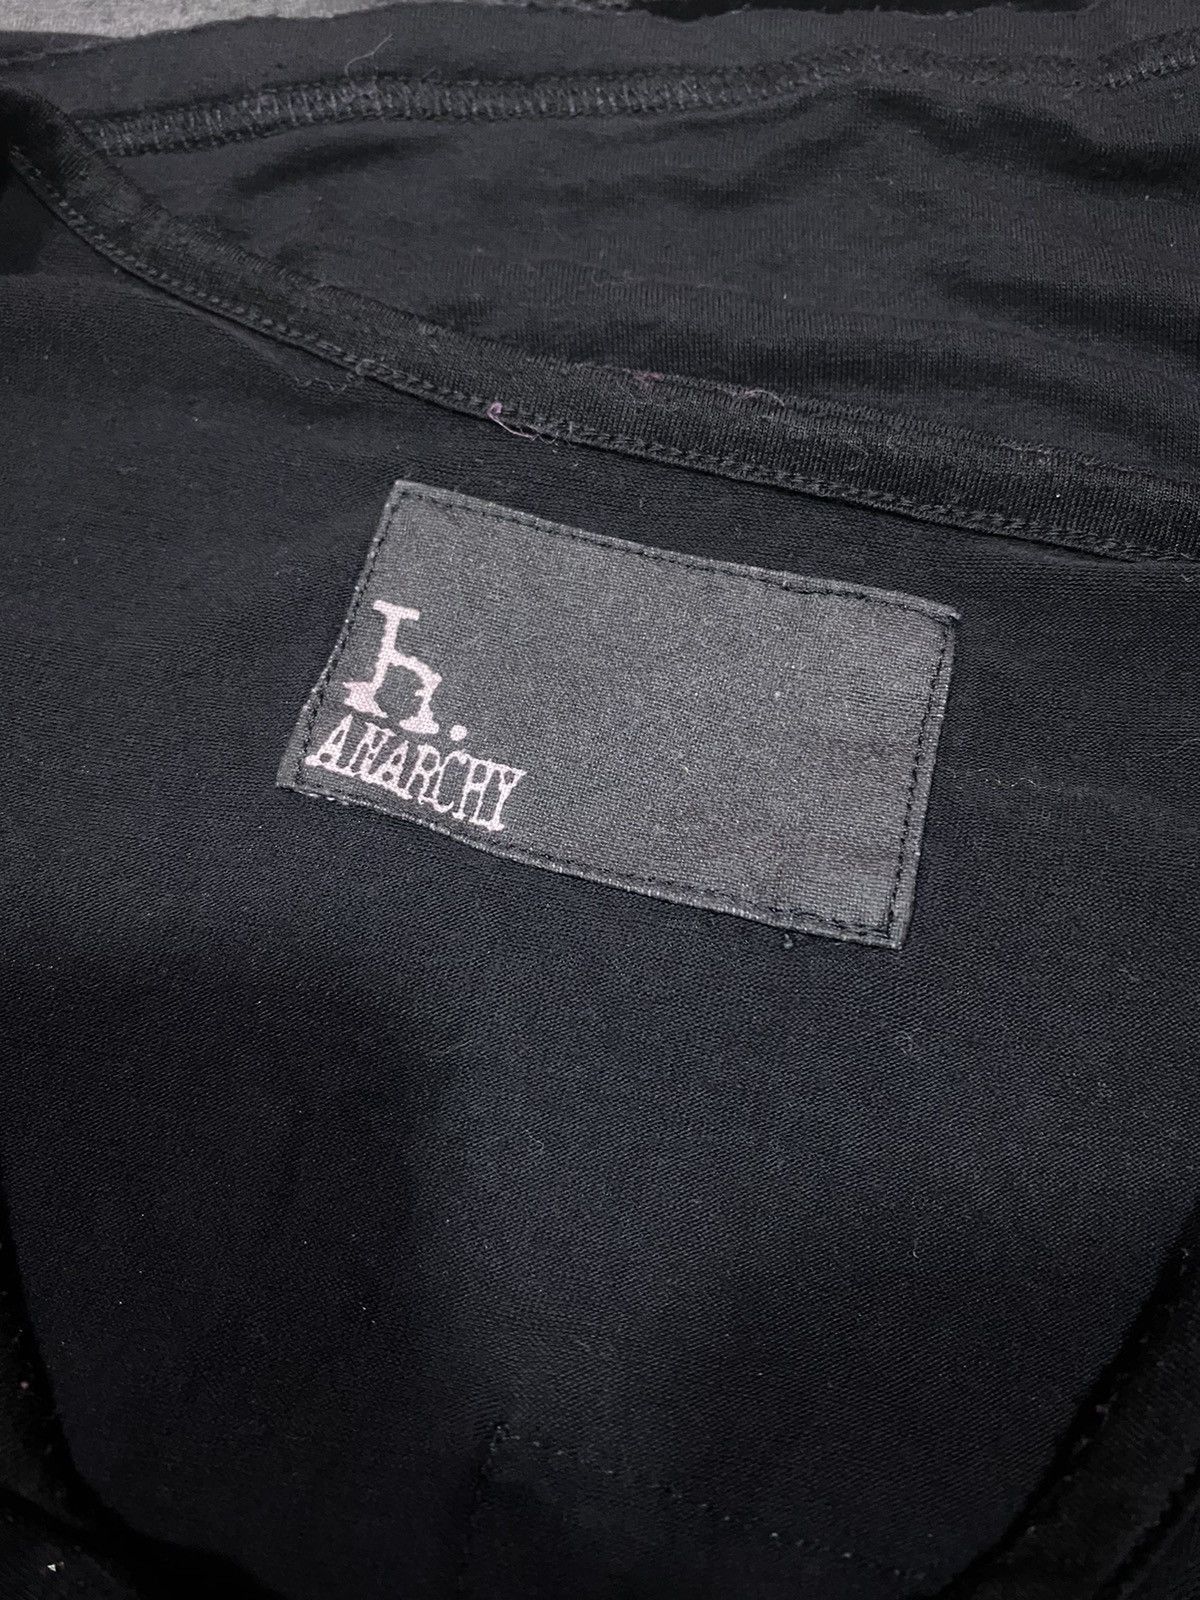 If Six Was Nine - H. Anarchy Punk Sleeveless Single Sleeve Bondage T-Shirt - 6